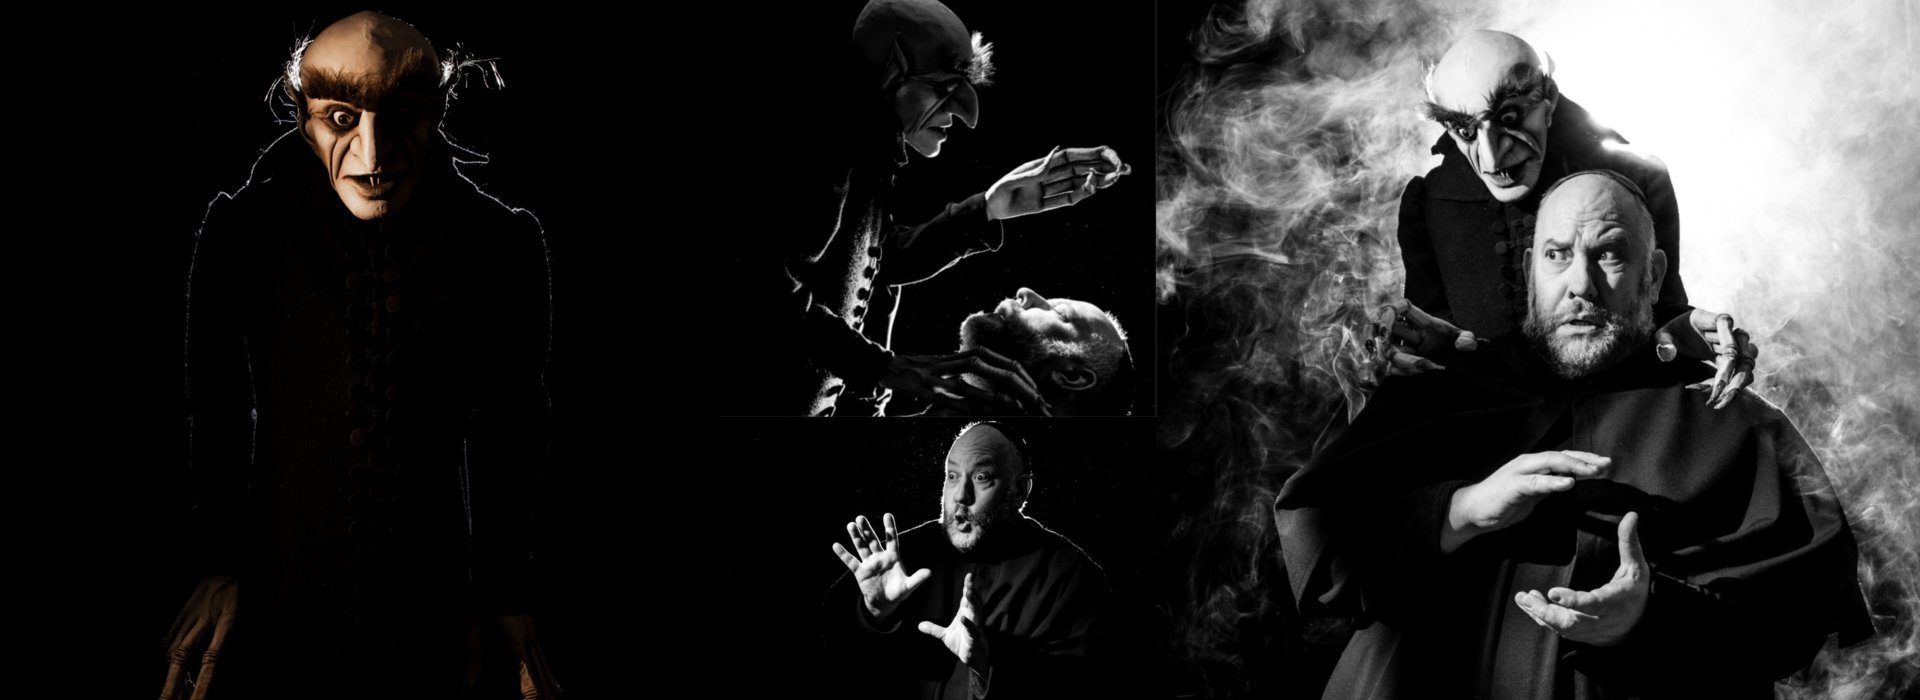 Nosferatu - Ein Menuett der Schatten